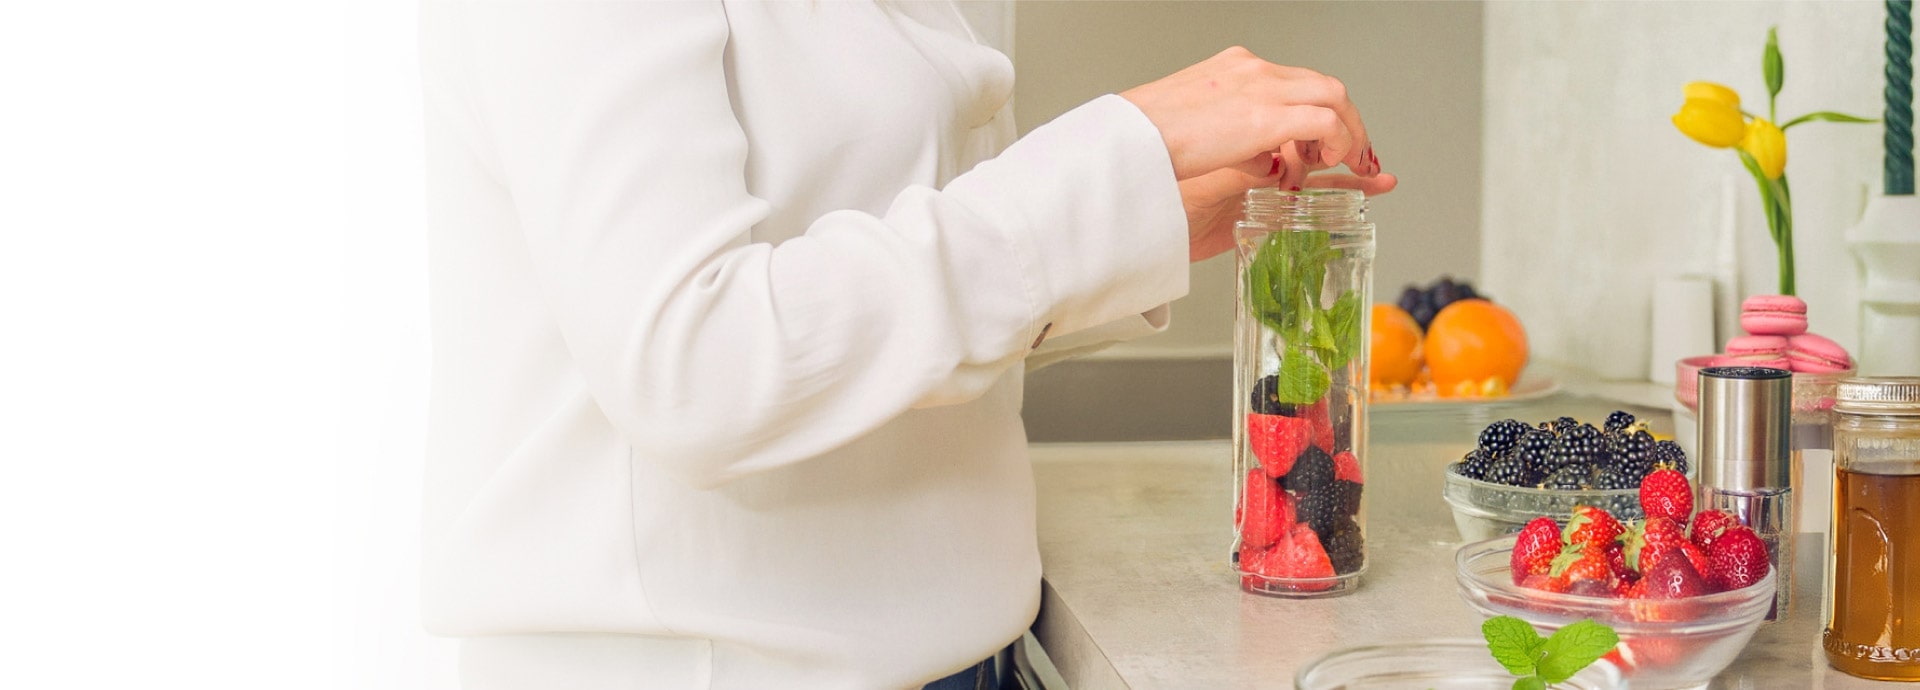 Eine Frau legt Erdbeeren, Blaubeeren und Kräuter in ein hohes Glasgefäß, um sie herum stehen Glasschalen mit Zutaten.